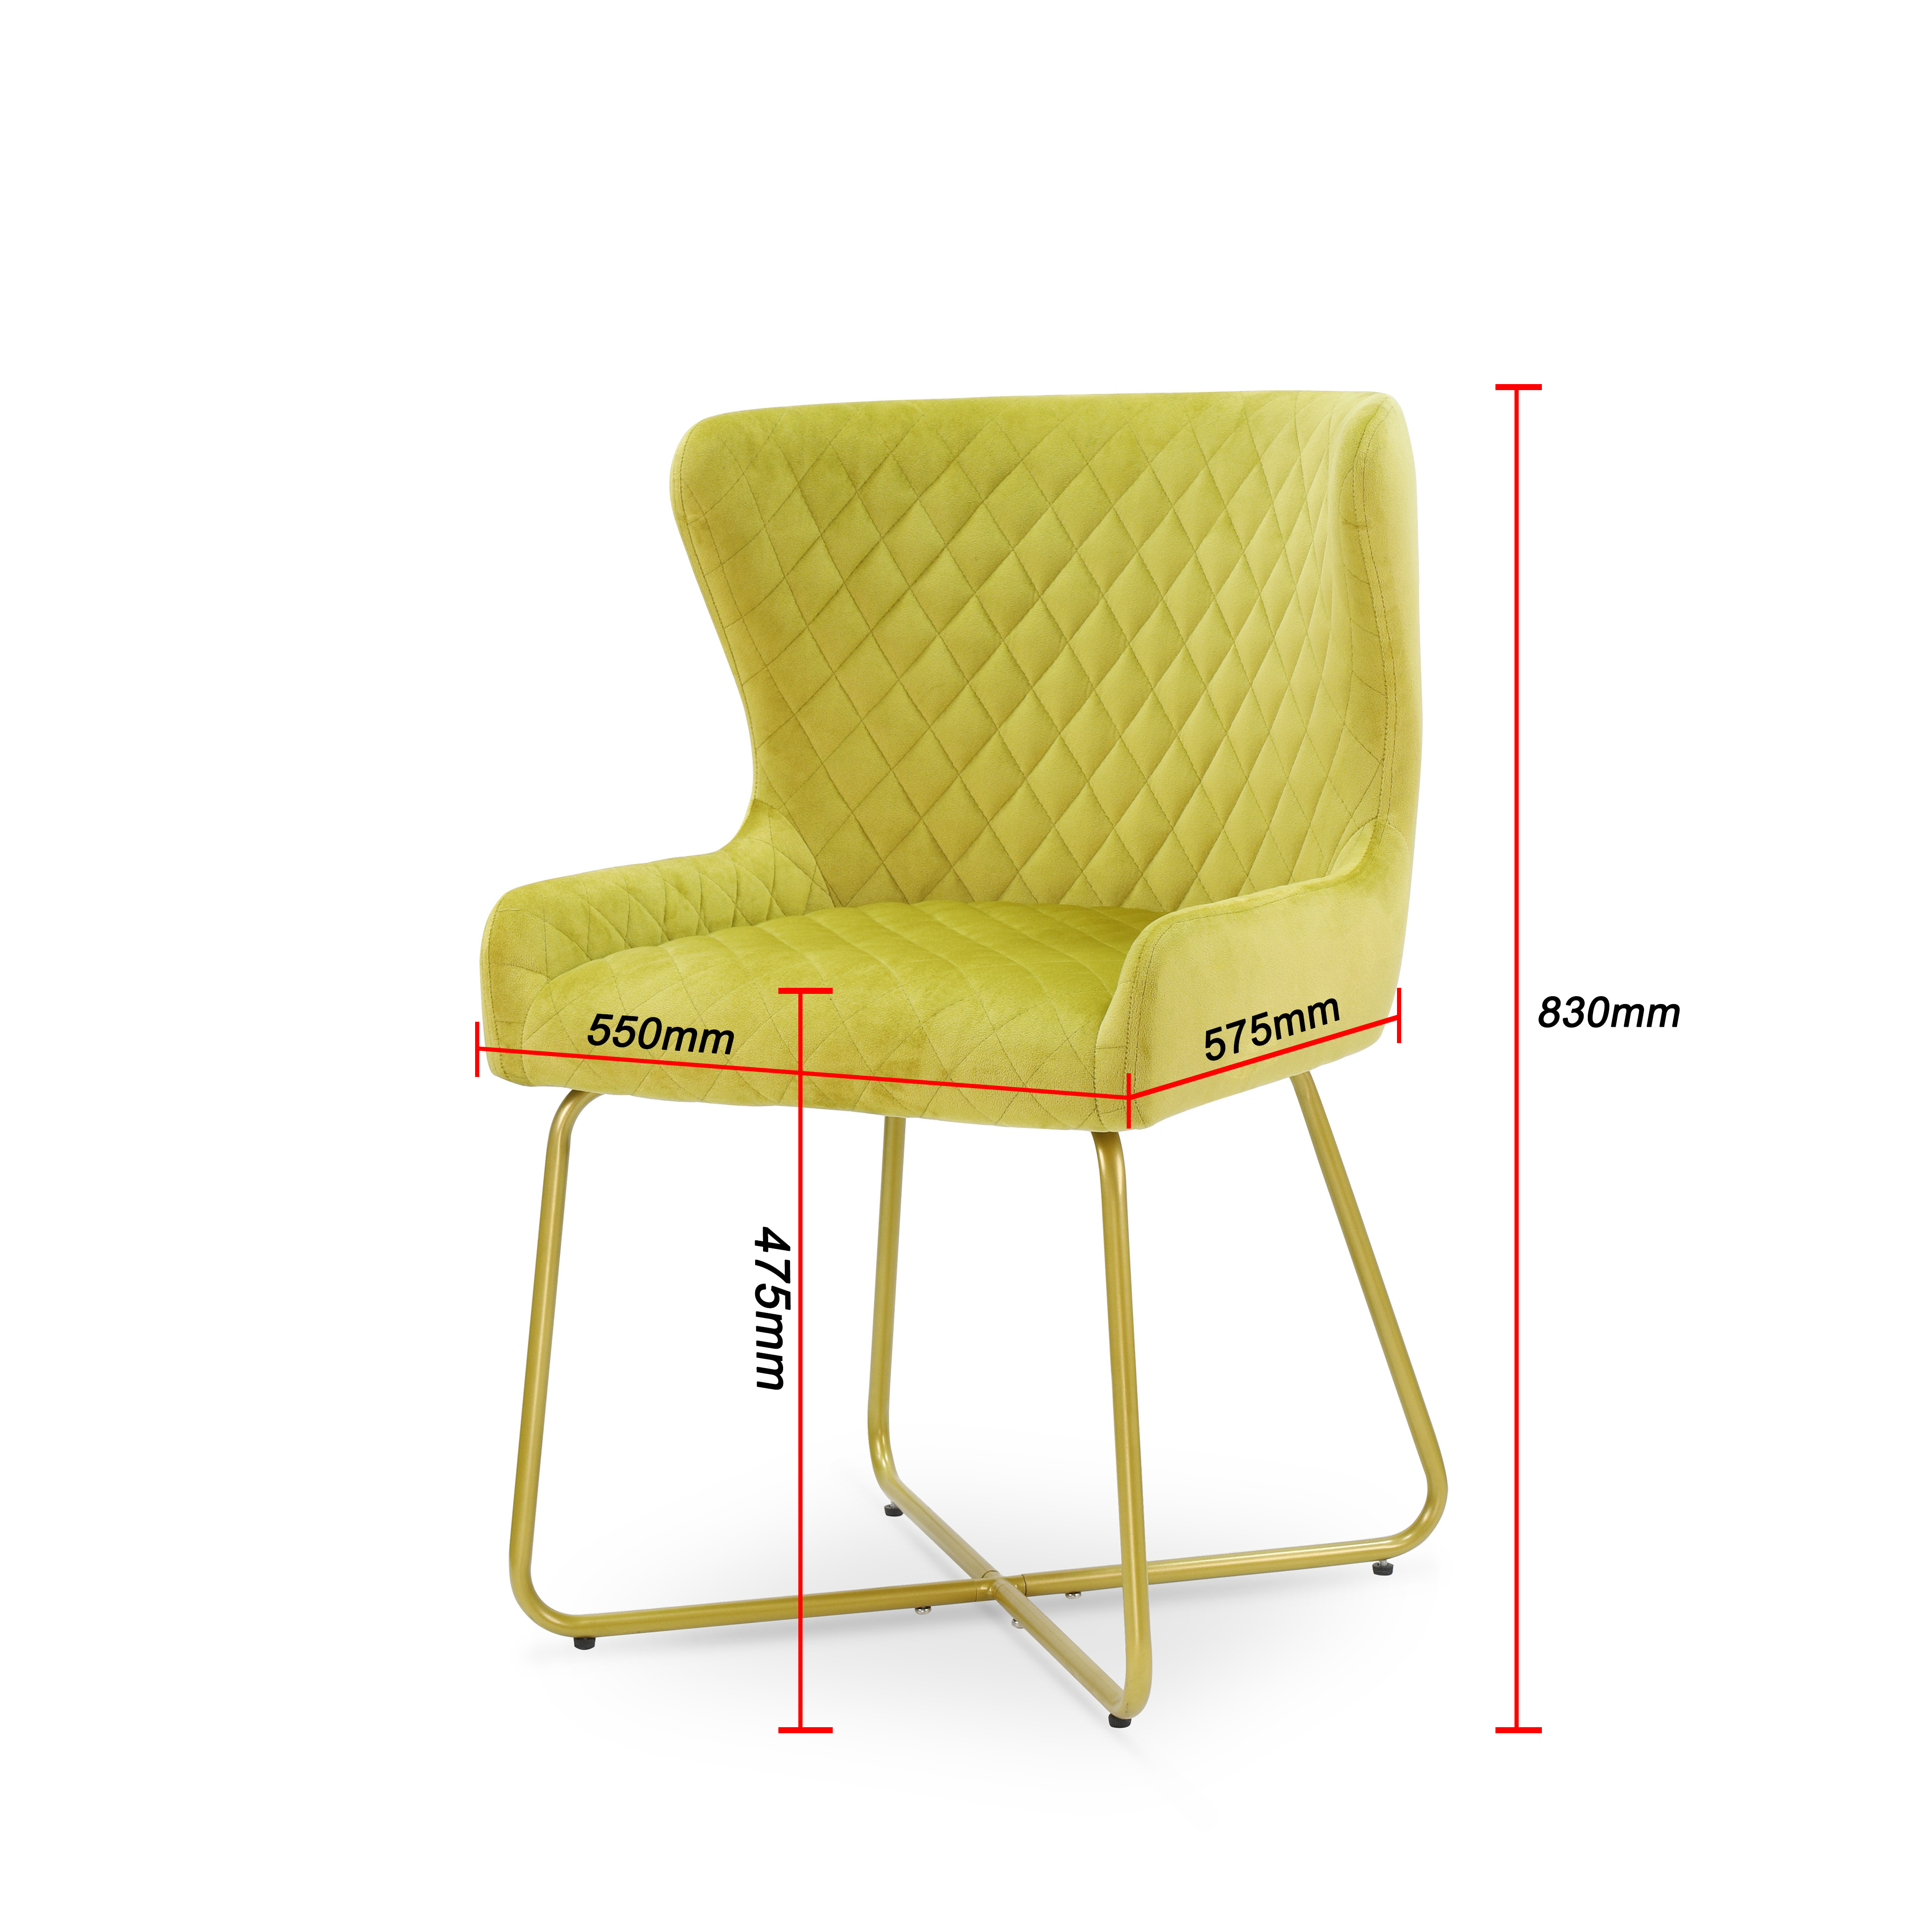 Velvet golden powder coating  metal Leg Chair for dining room or living room  DC-2302